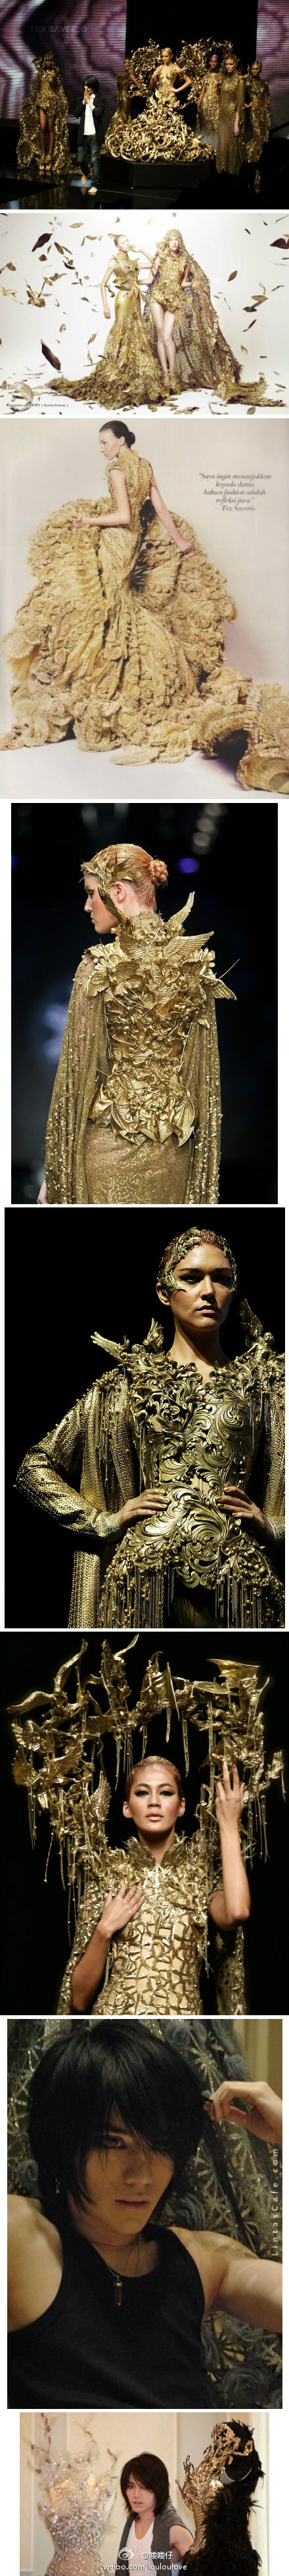 好吧，既然大家那么喜欢那套“黄金圣衣”。普及一下。设计师是一位年轻美型男，来自印尼的设计师：Tex Saverio